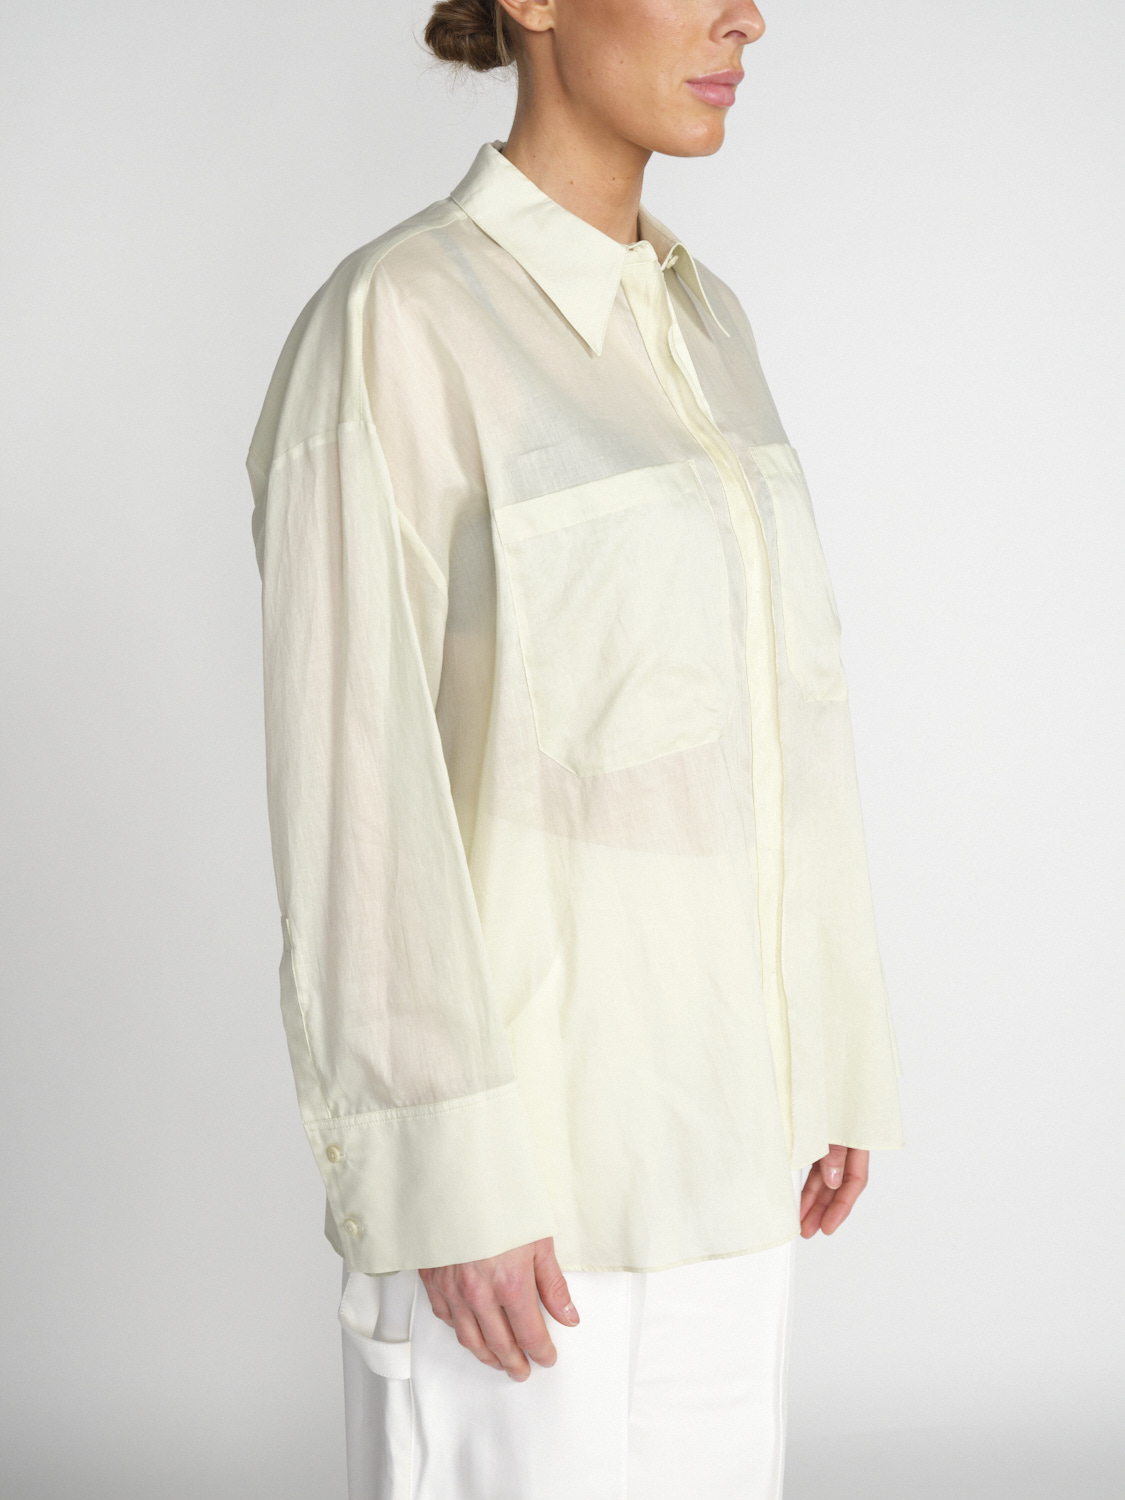 Dorothee Schumacher Fantasy - Leicht transparente Bluse aus Baumwolle 	  -blanco S